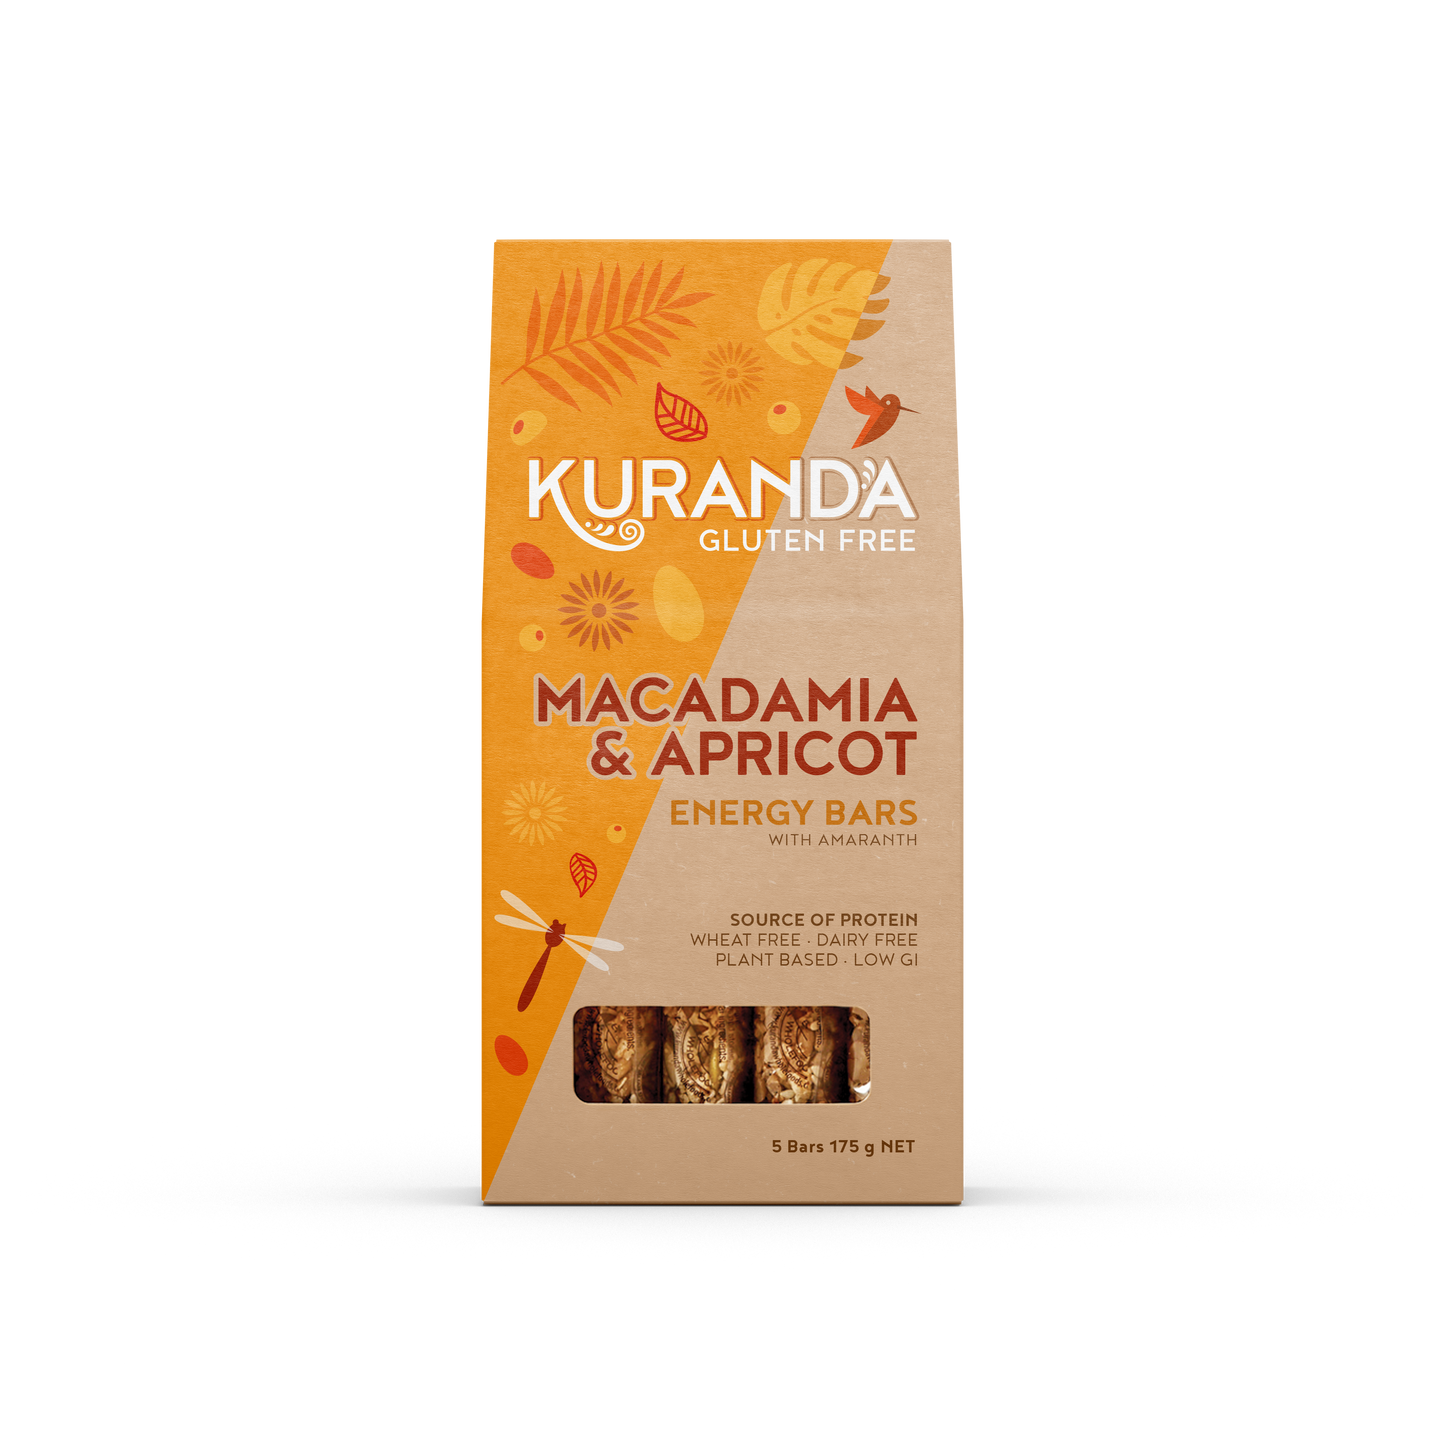 Macadamia and Apricot Energy Bars